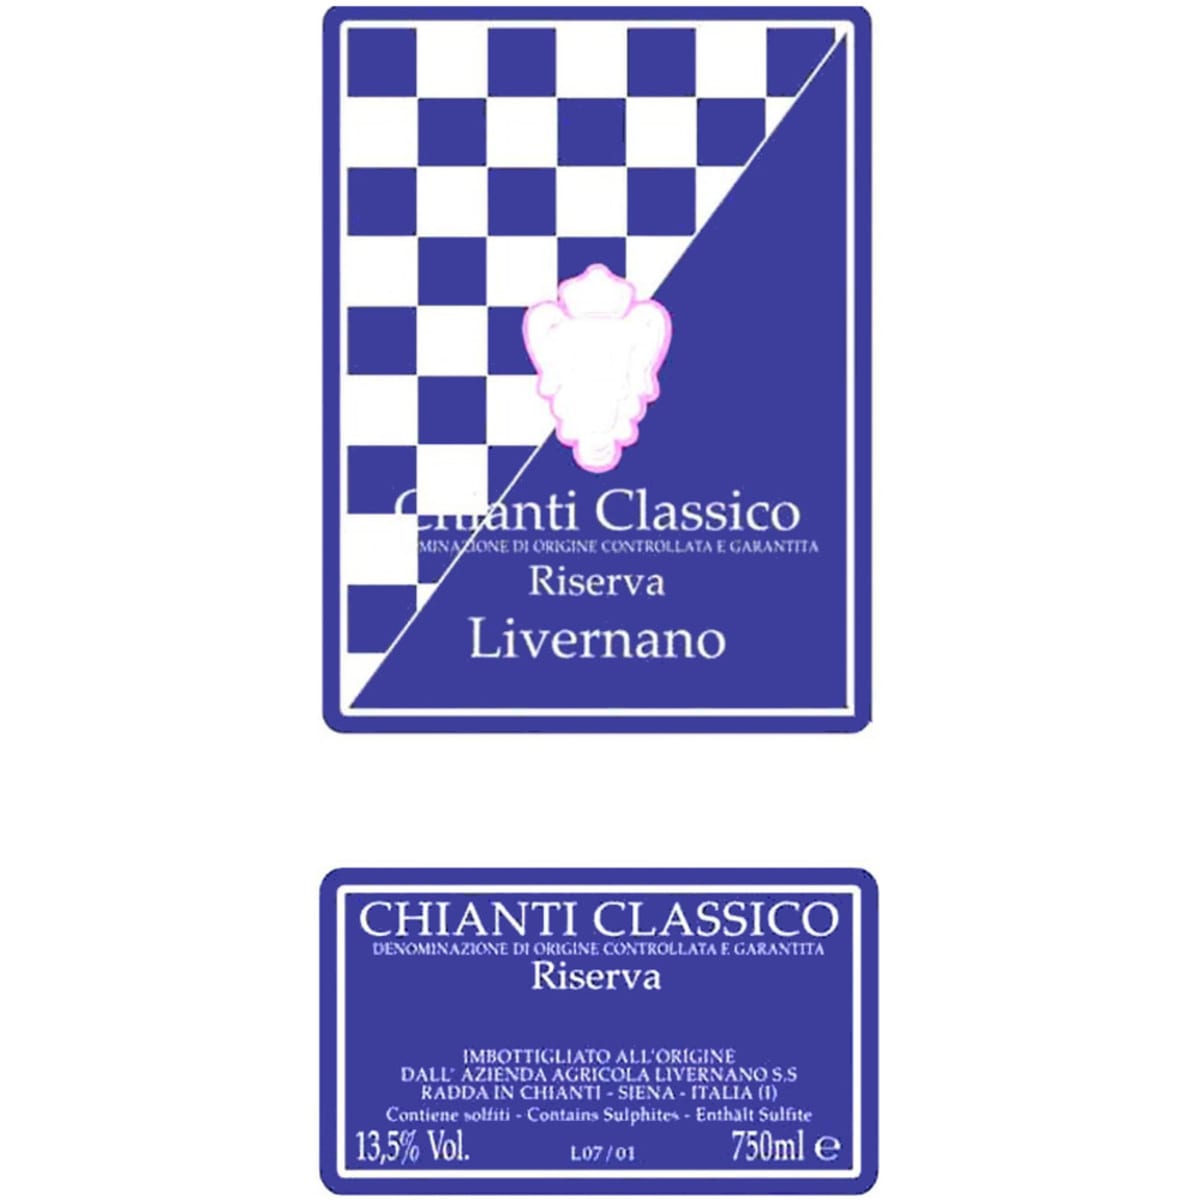 Livernano Chianti Classico Riserva 2005 Front Label